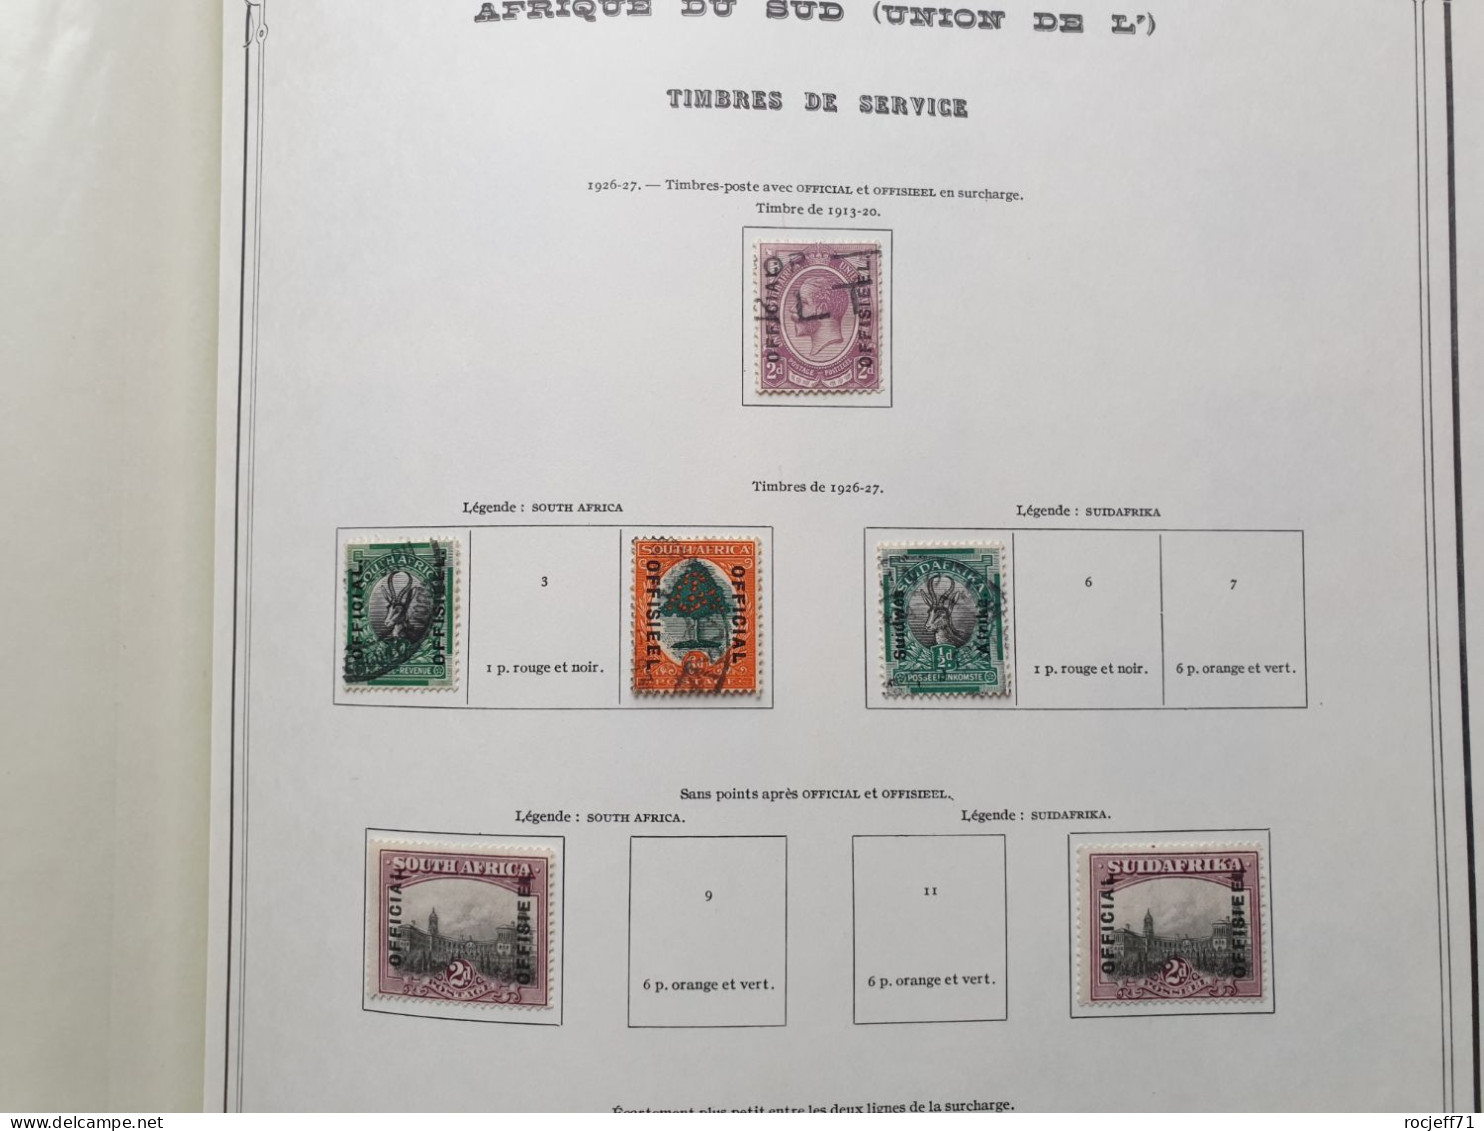 12 - 23 // Afrique du Sud - Belle collection entre 1910 et 1970 sur page d'Album - Cote environs 1150 euros  / 41 scan